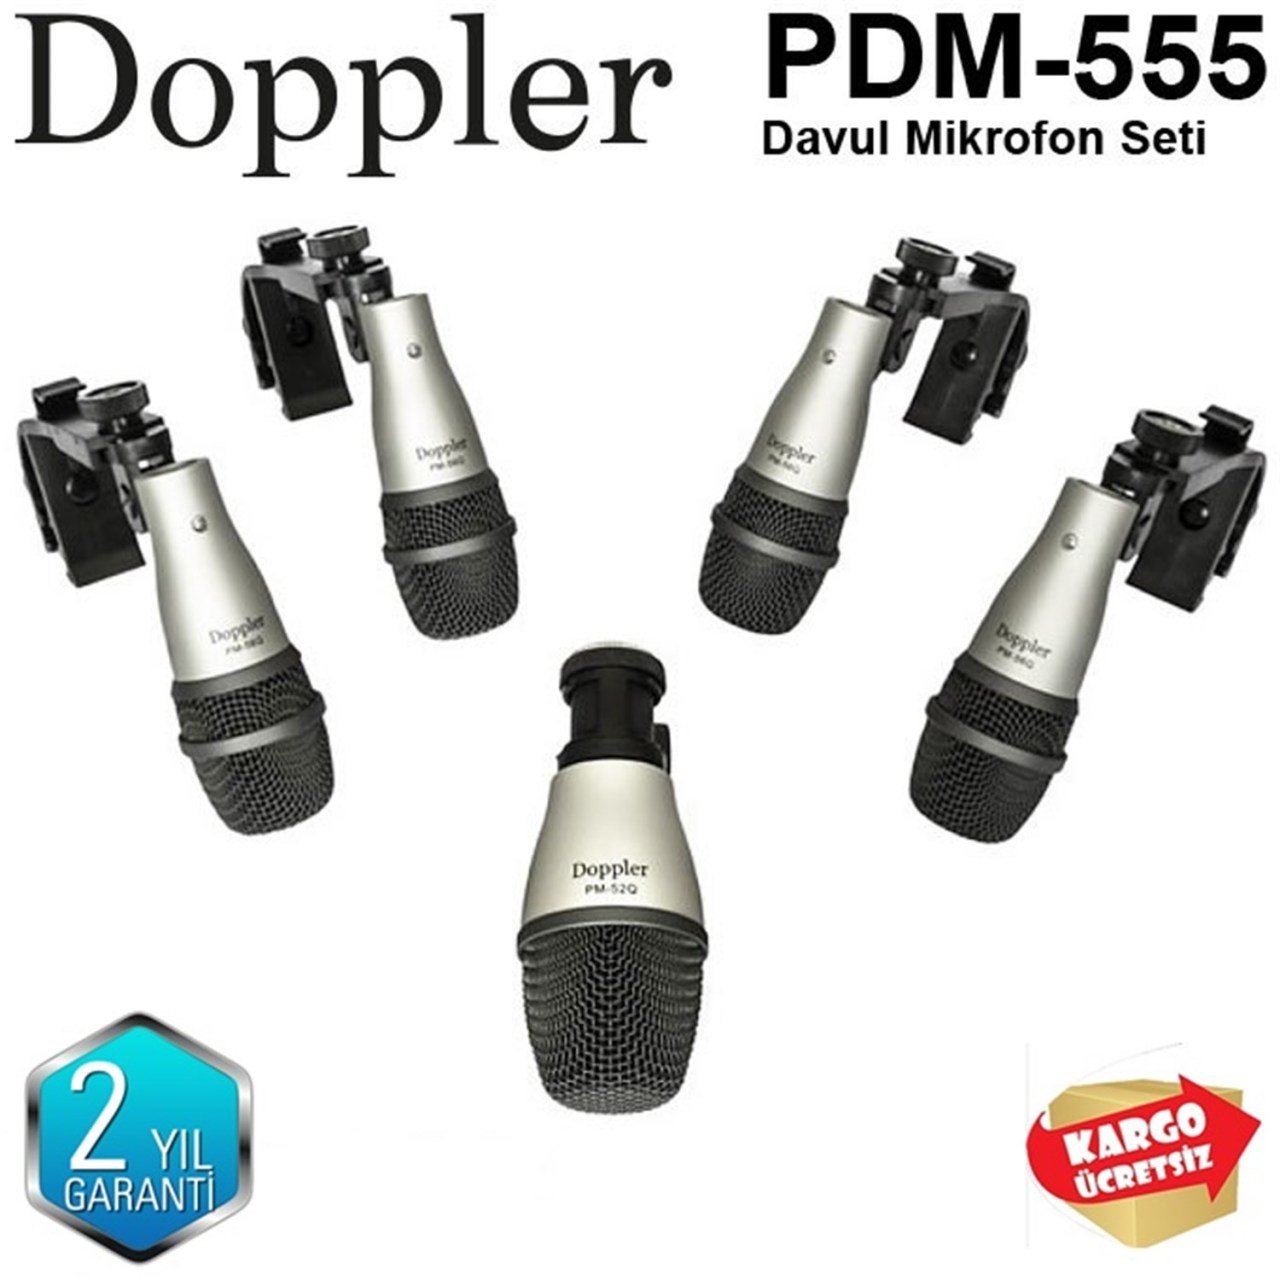 DOPPLER PDM-555